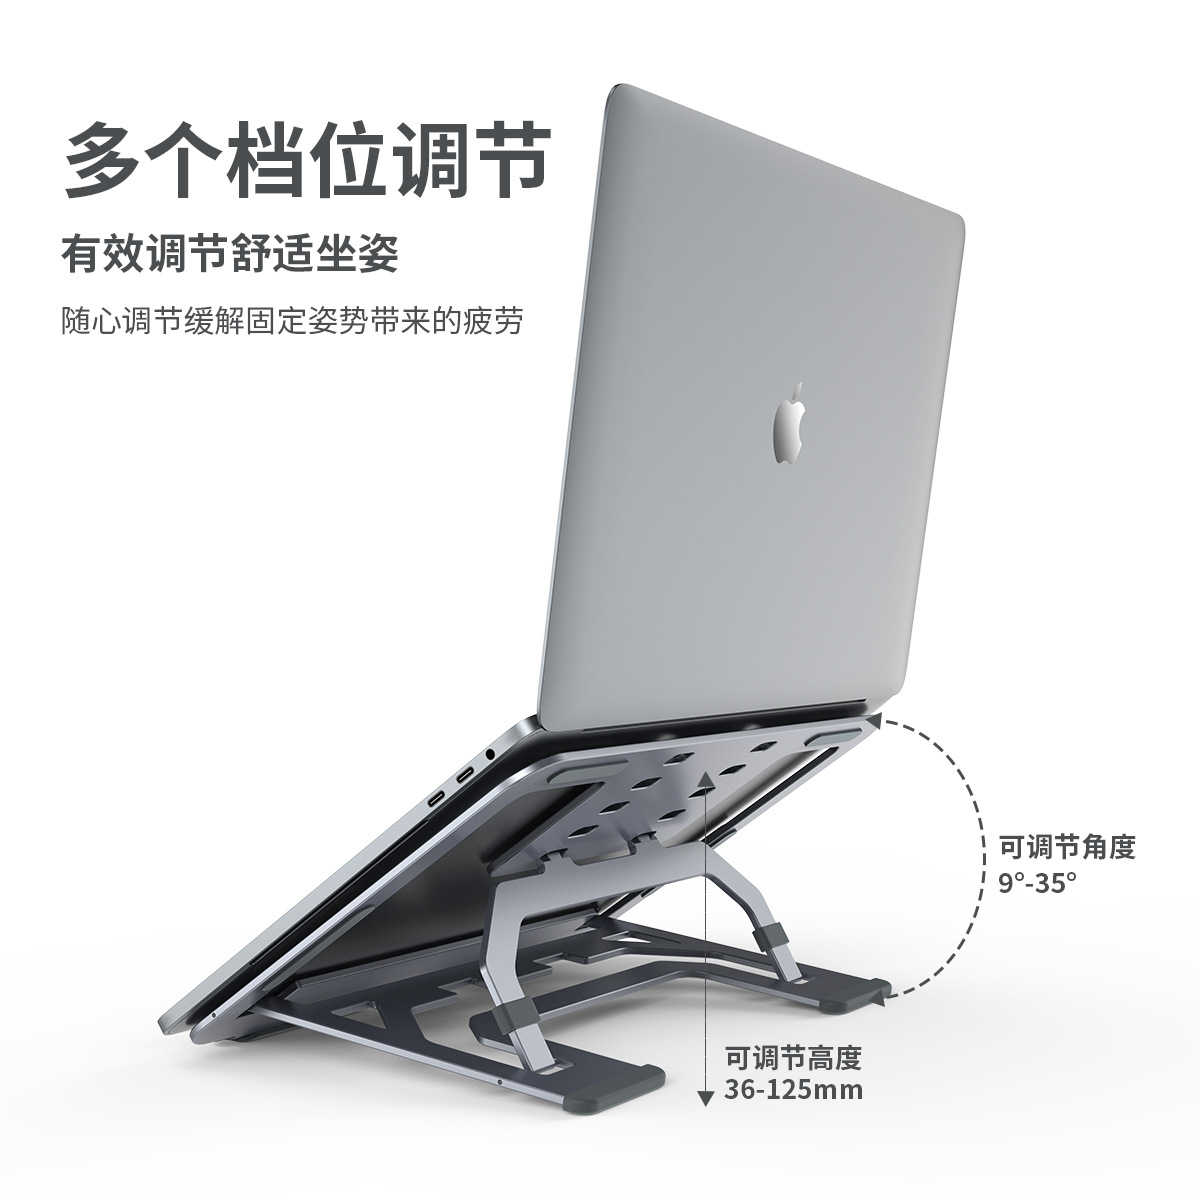 超薄铝合金桌面/可折叠升降调节散热机械多功能/笔记本电脑支架托架产品图